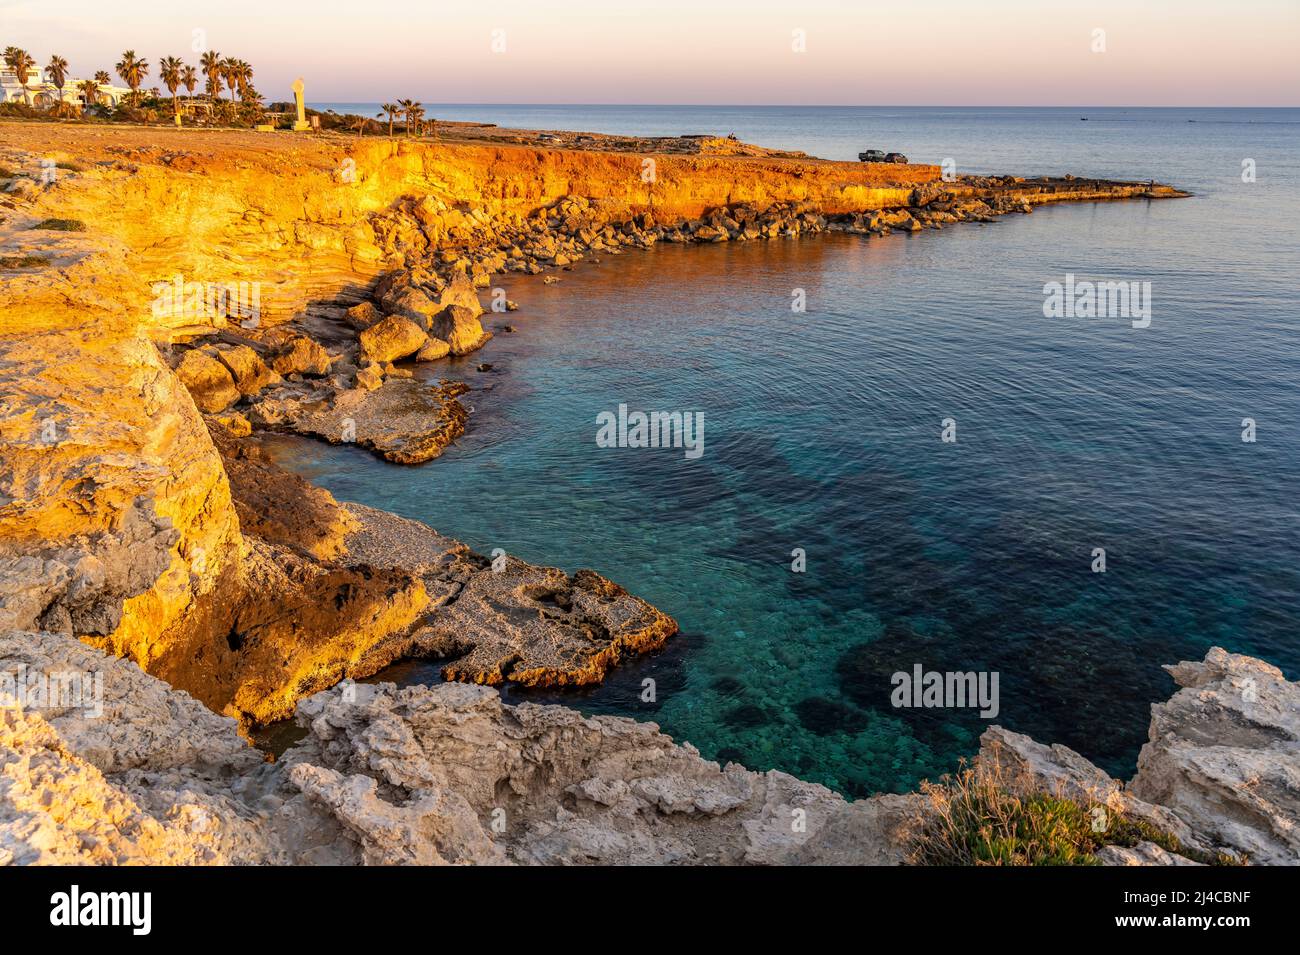 Felsen an der Küste BEI Agia Napa im Abendlicht, Zypern, Europa | la côte rocheuse près d'Ayia Napa dans la lumière du soir, Chypre, Europe Banque D'Images